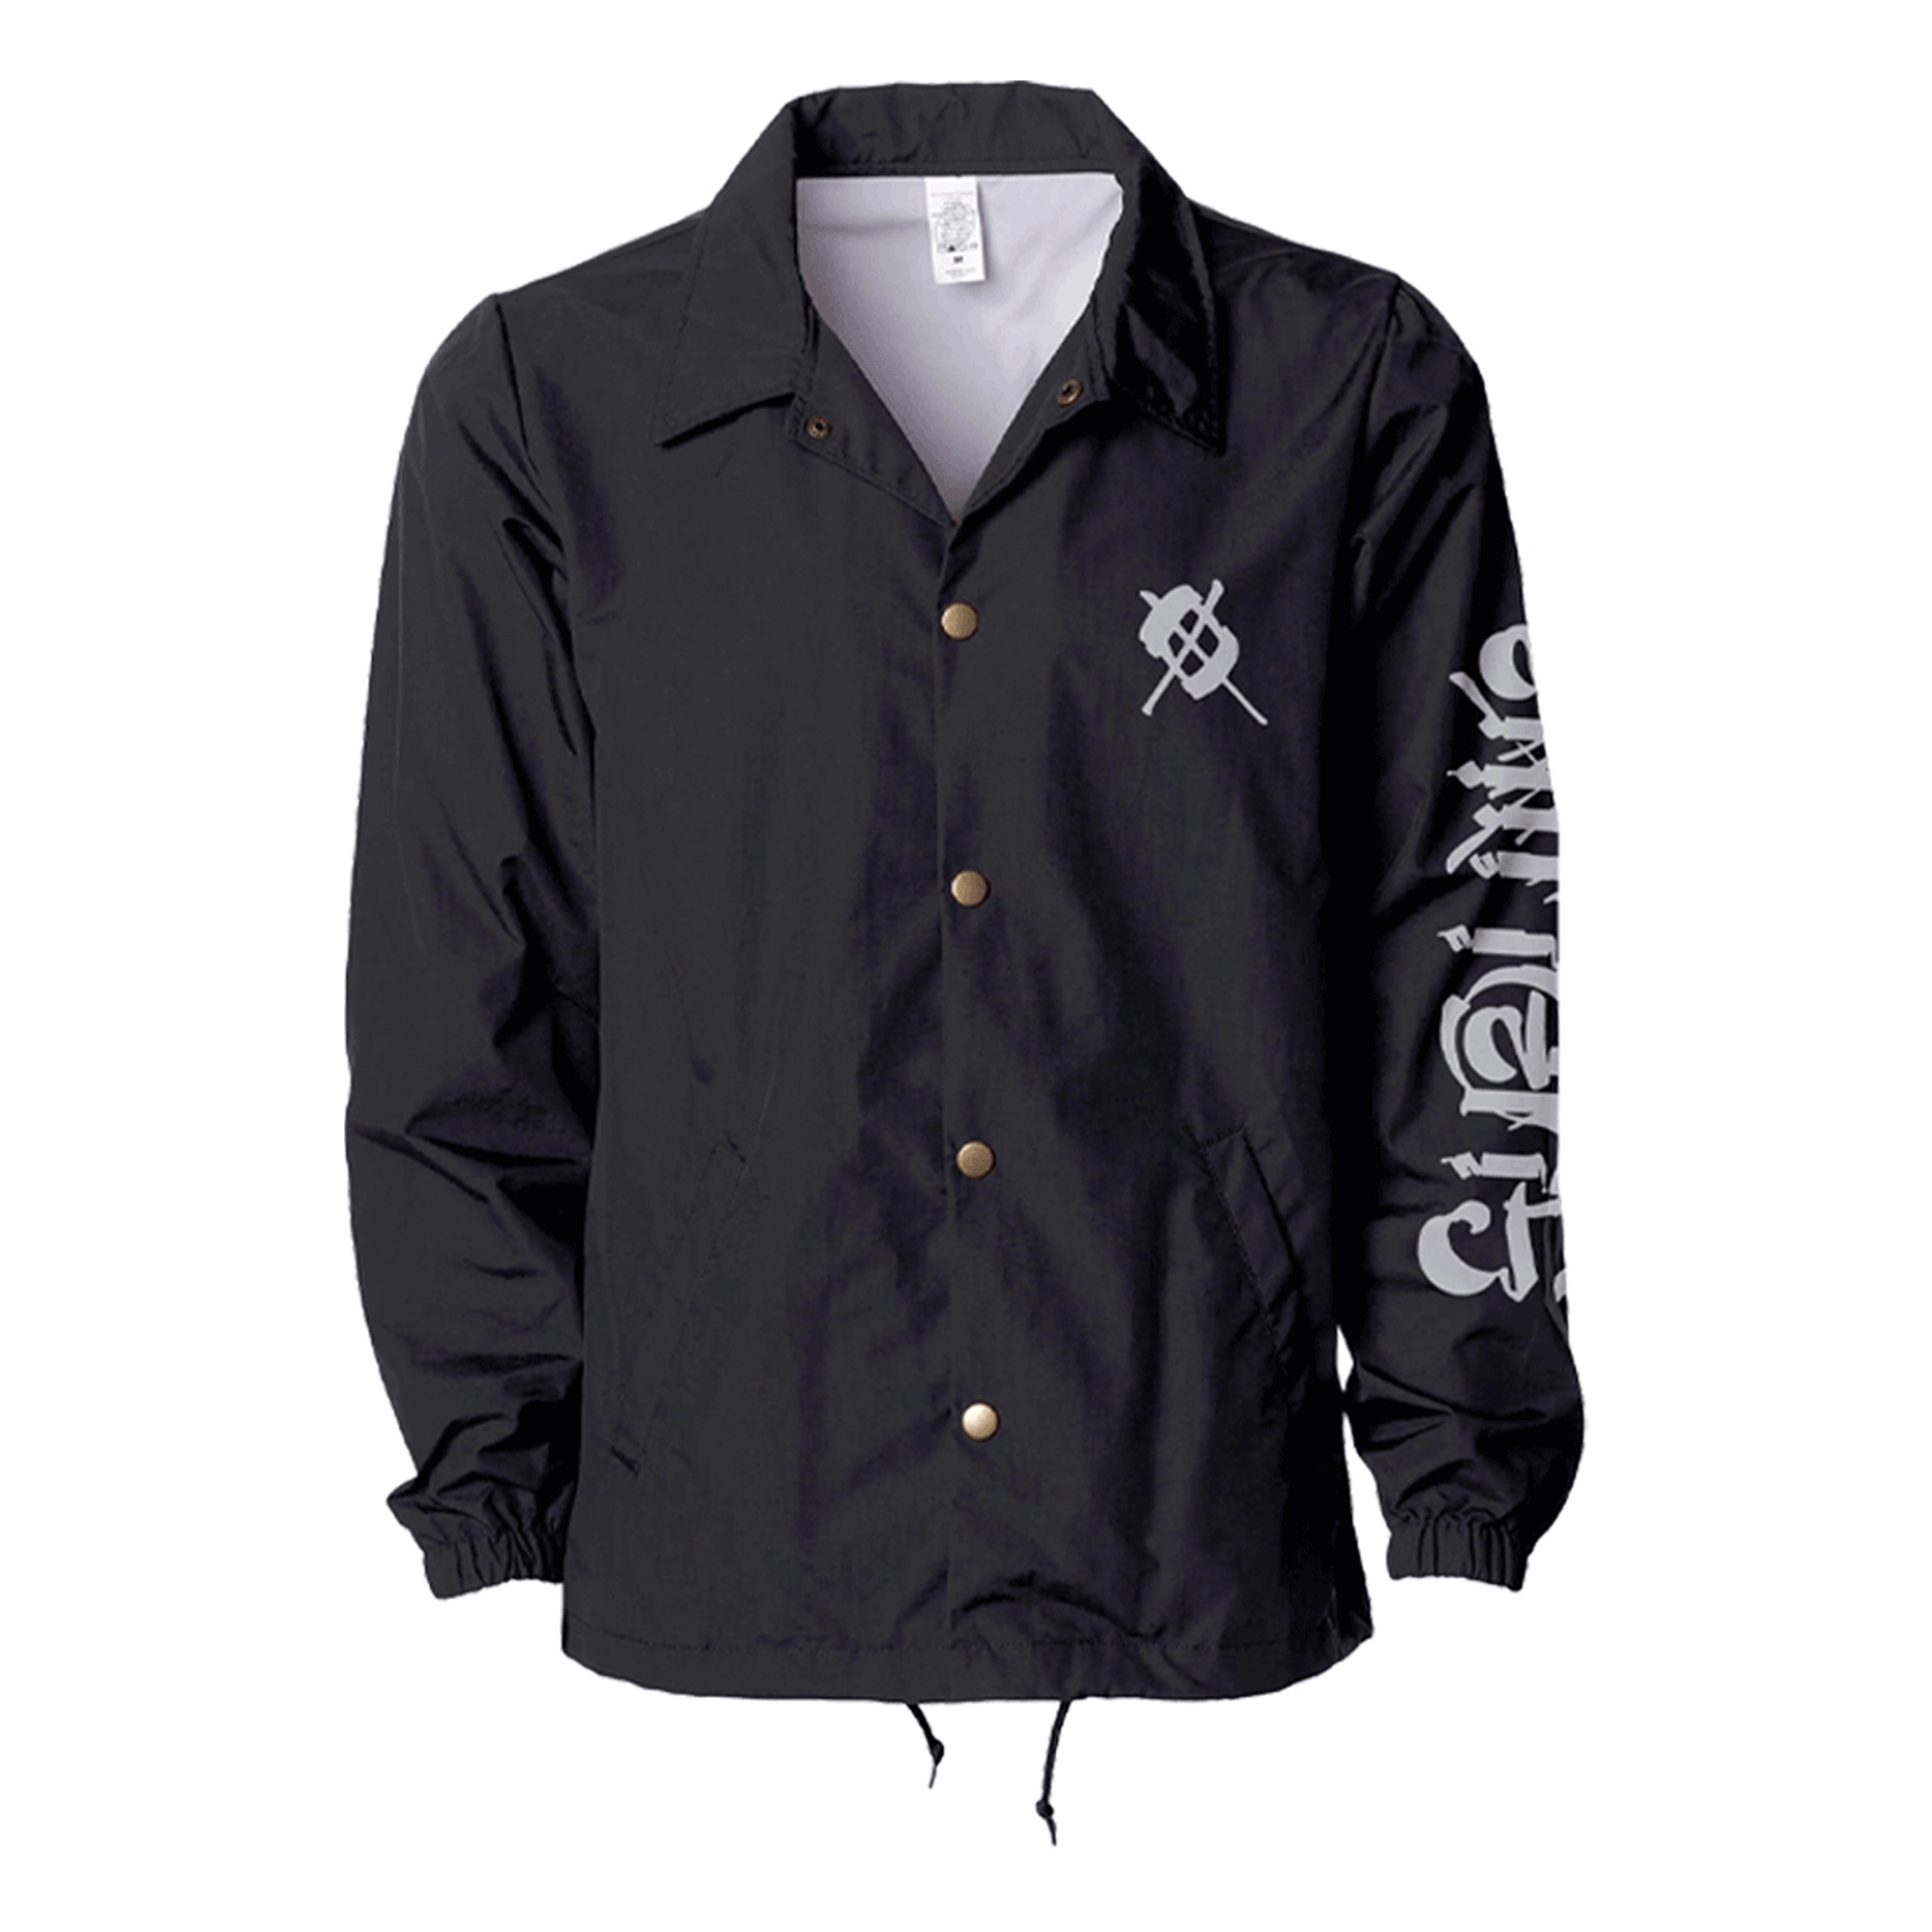 Sublime x Chaz Coaches Jacket - Black